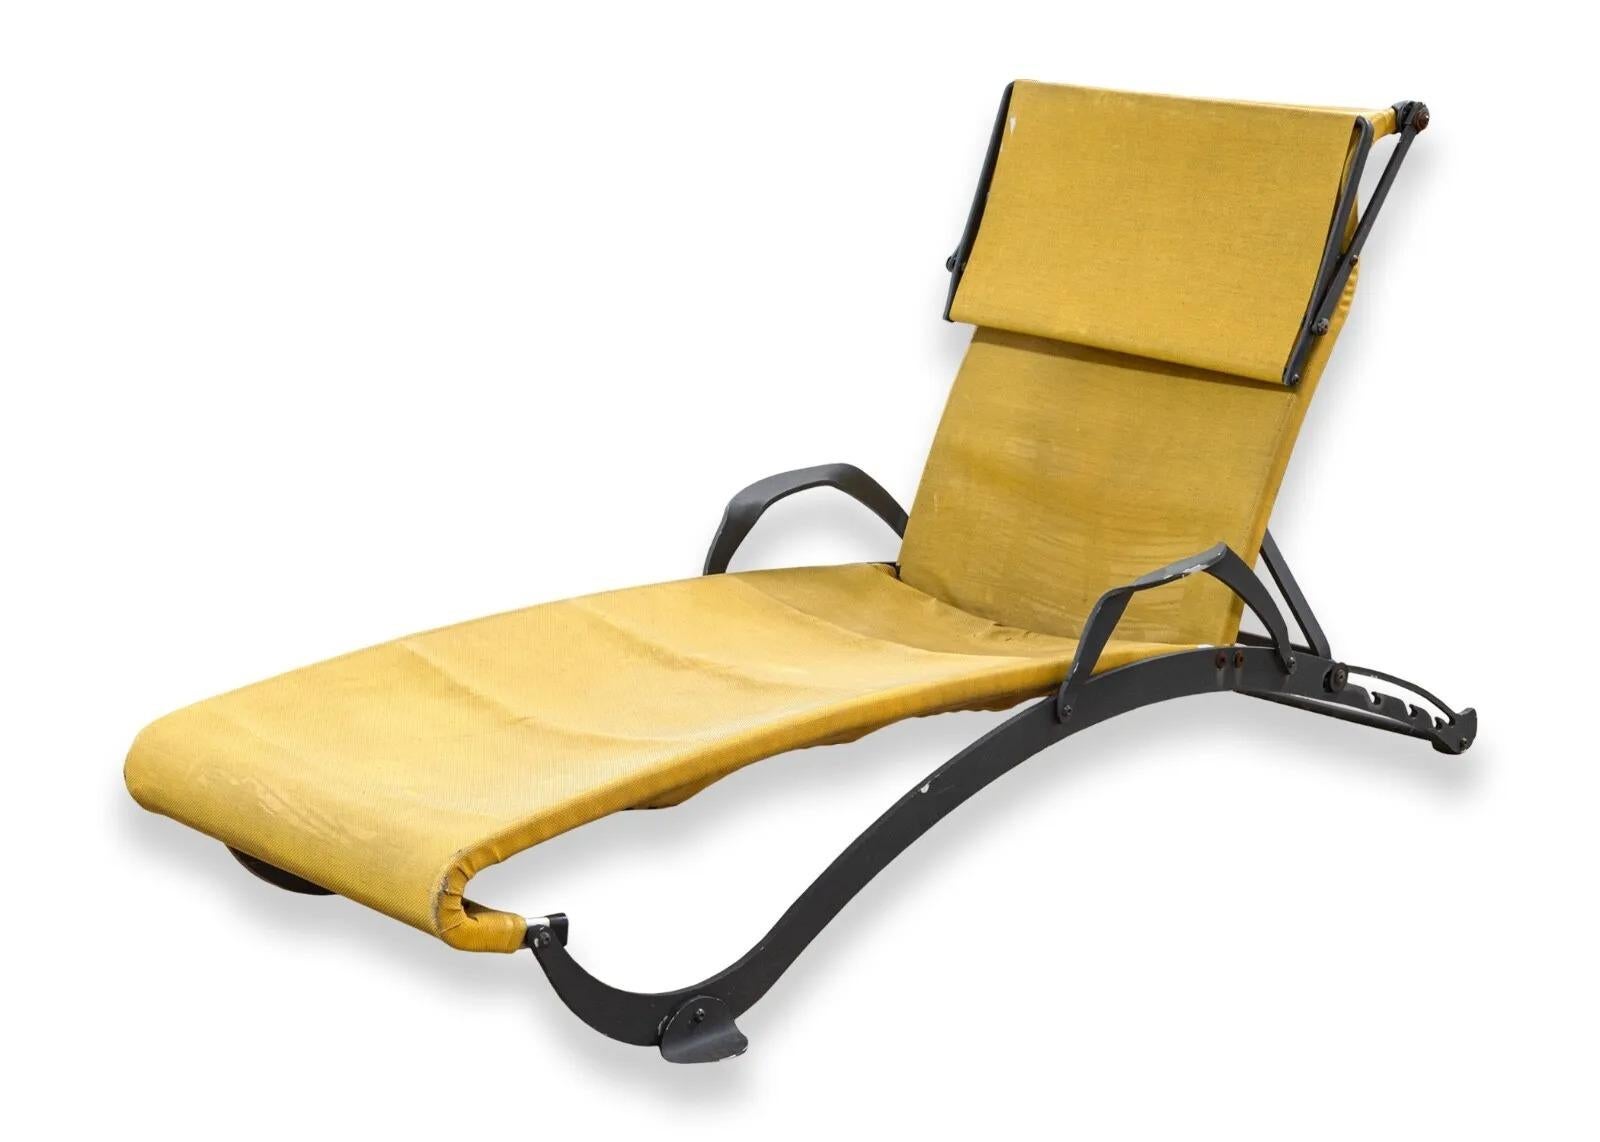 Les chaises longues inclinables pour l'extérieur de Five Stars Italy offrent un mélange parfait de confort et de style pour tout espace extérieur, avec un tissu jaune vibrant qui se démarque de la structure métallique noire durable. Ces chaises sont